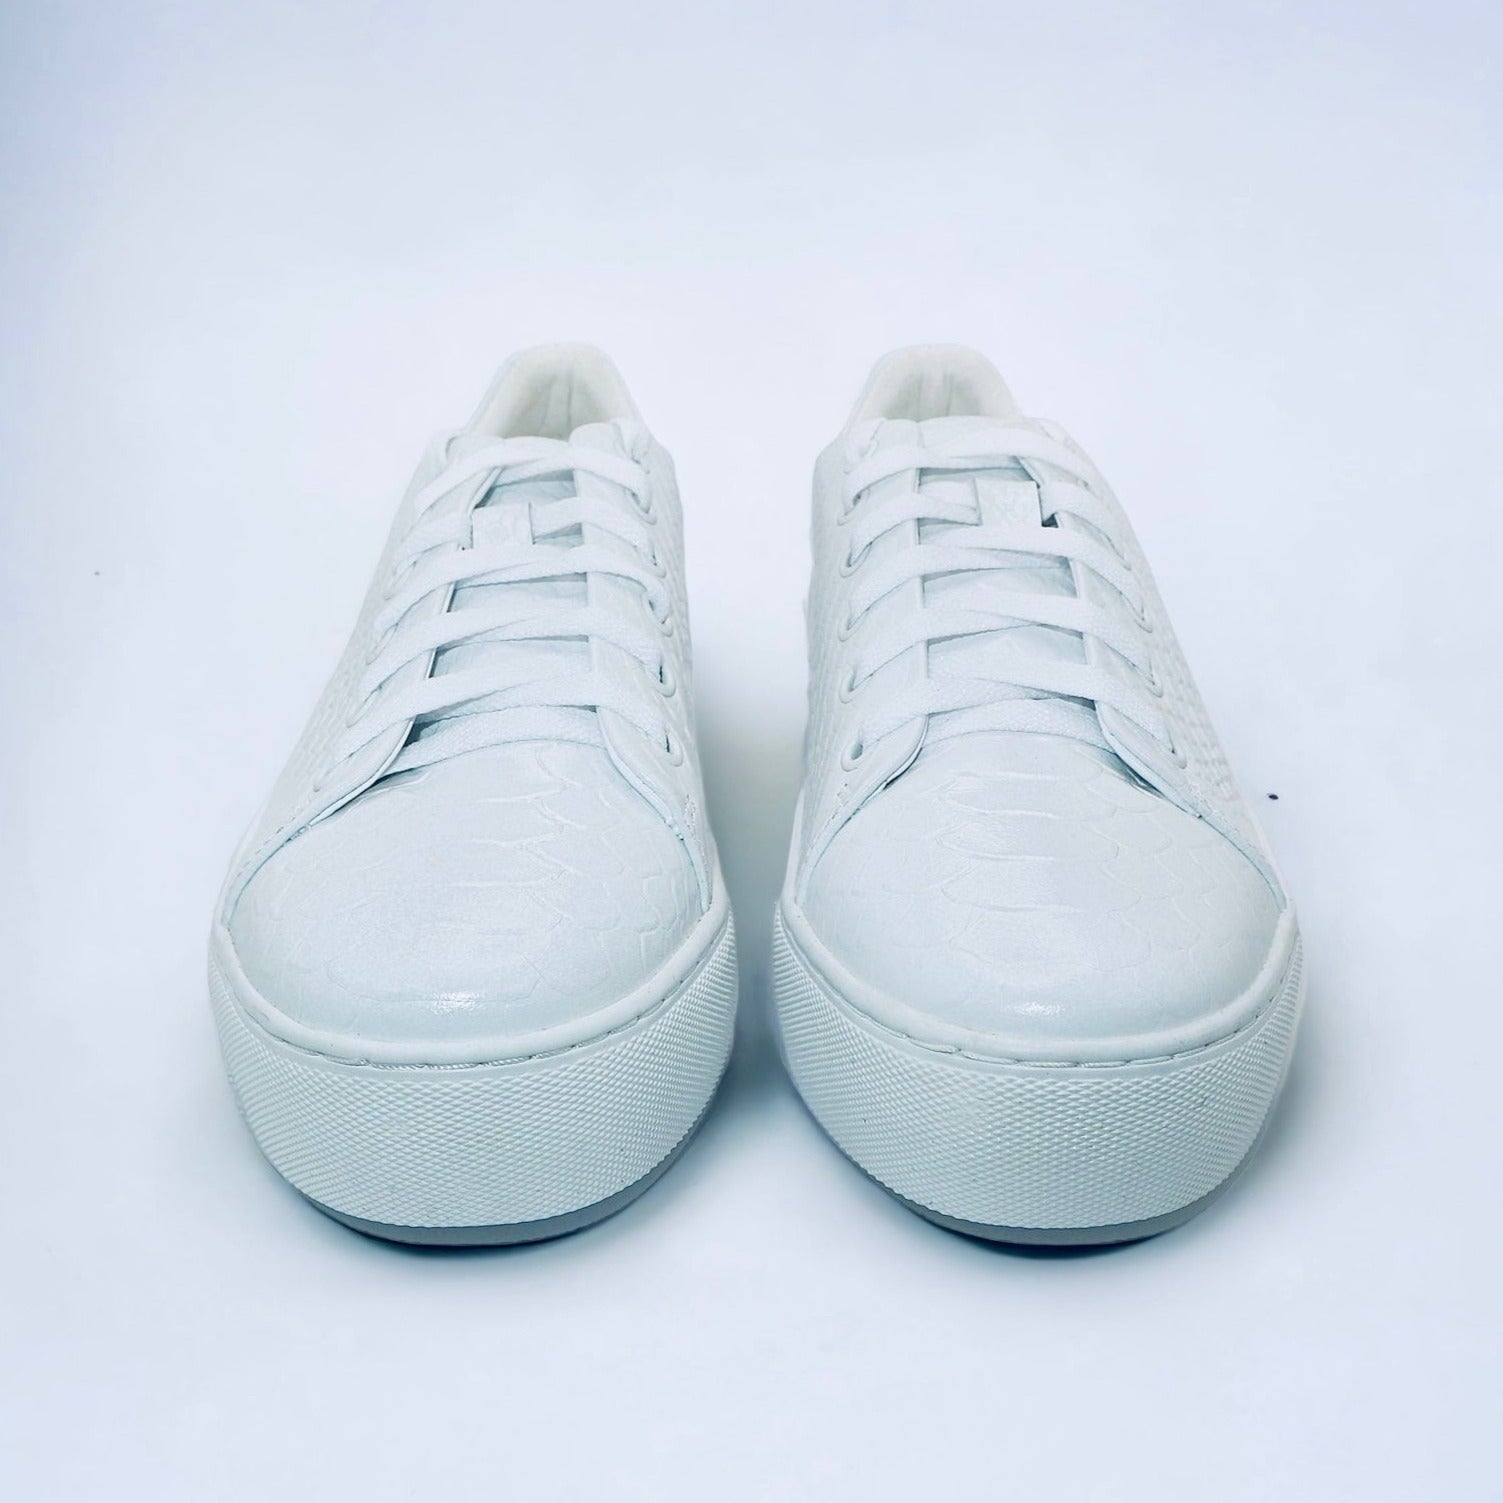 Michaela sneakers Best Amare the V | for Girls white